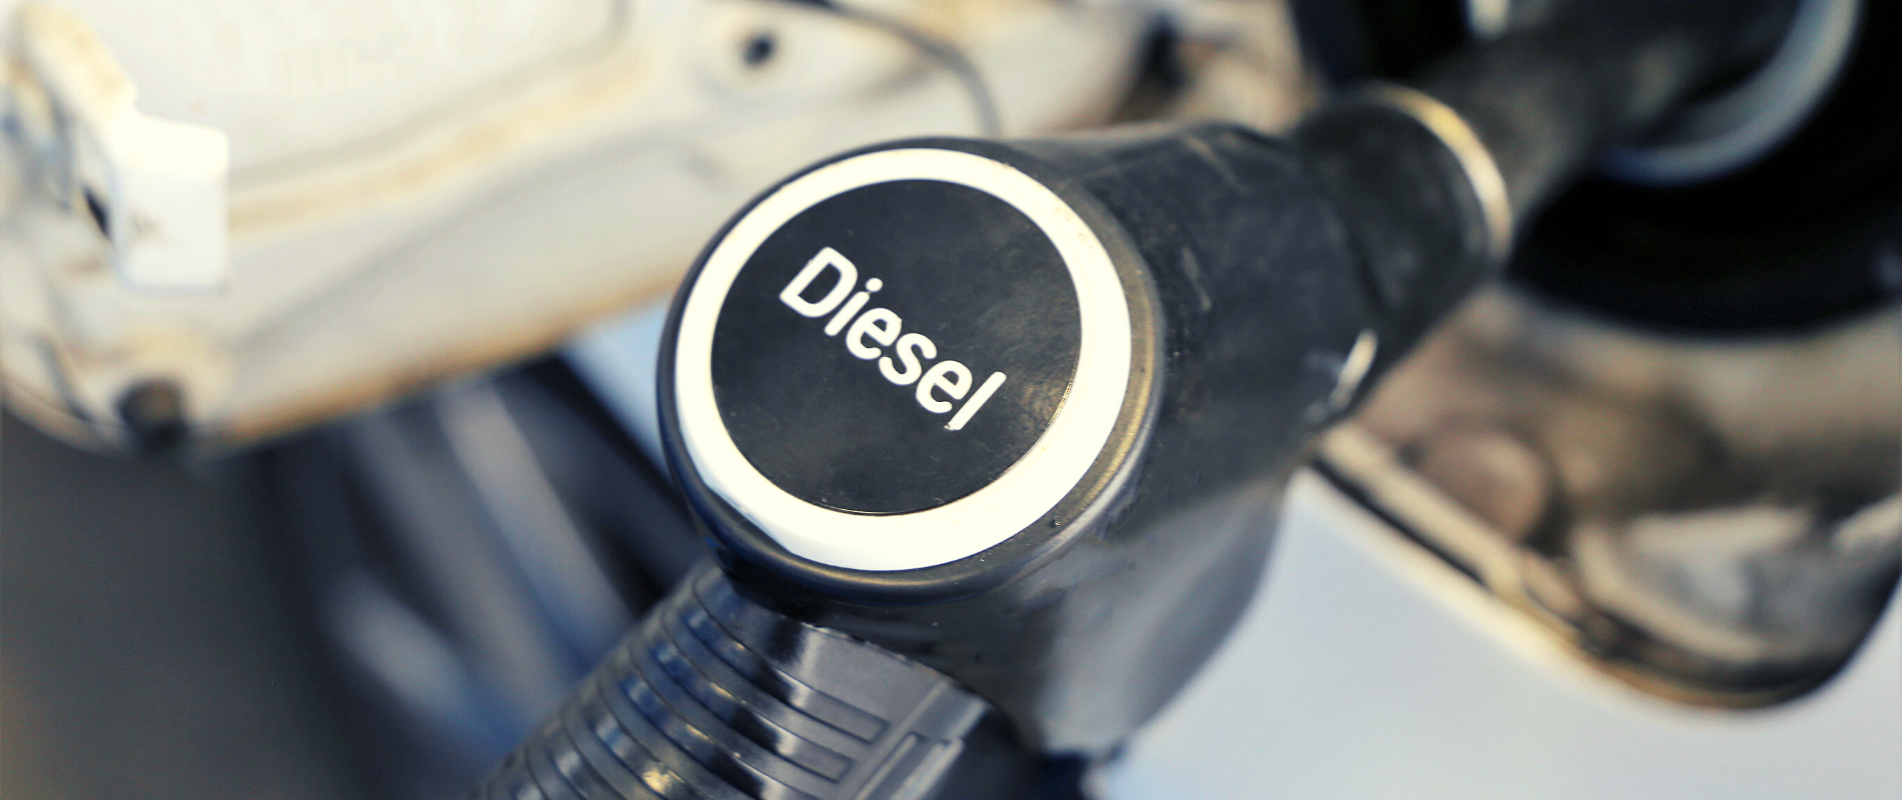 Diesel - Bra